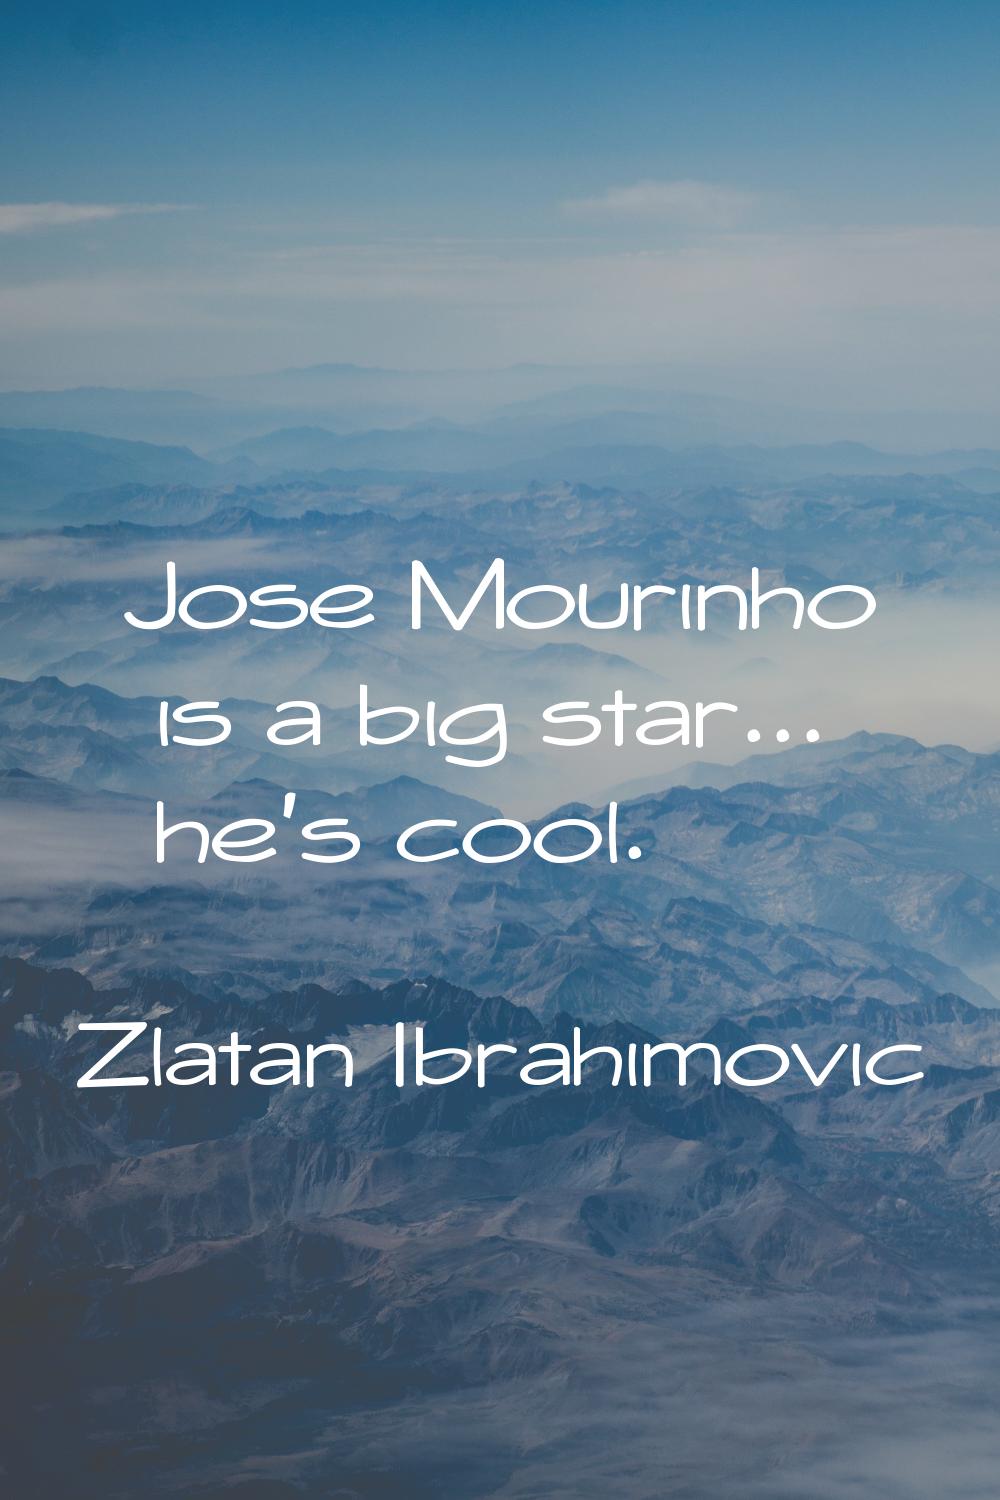 Jose Mourinho is a big star... he's cool.